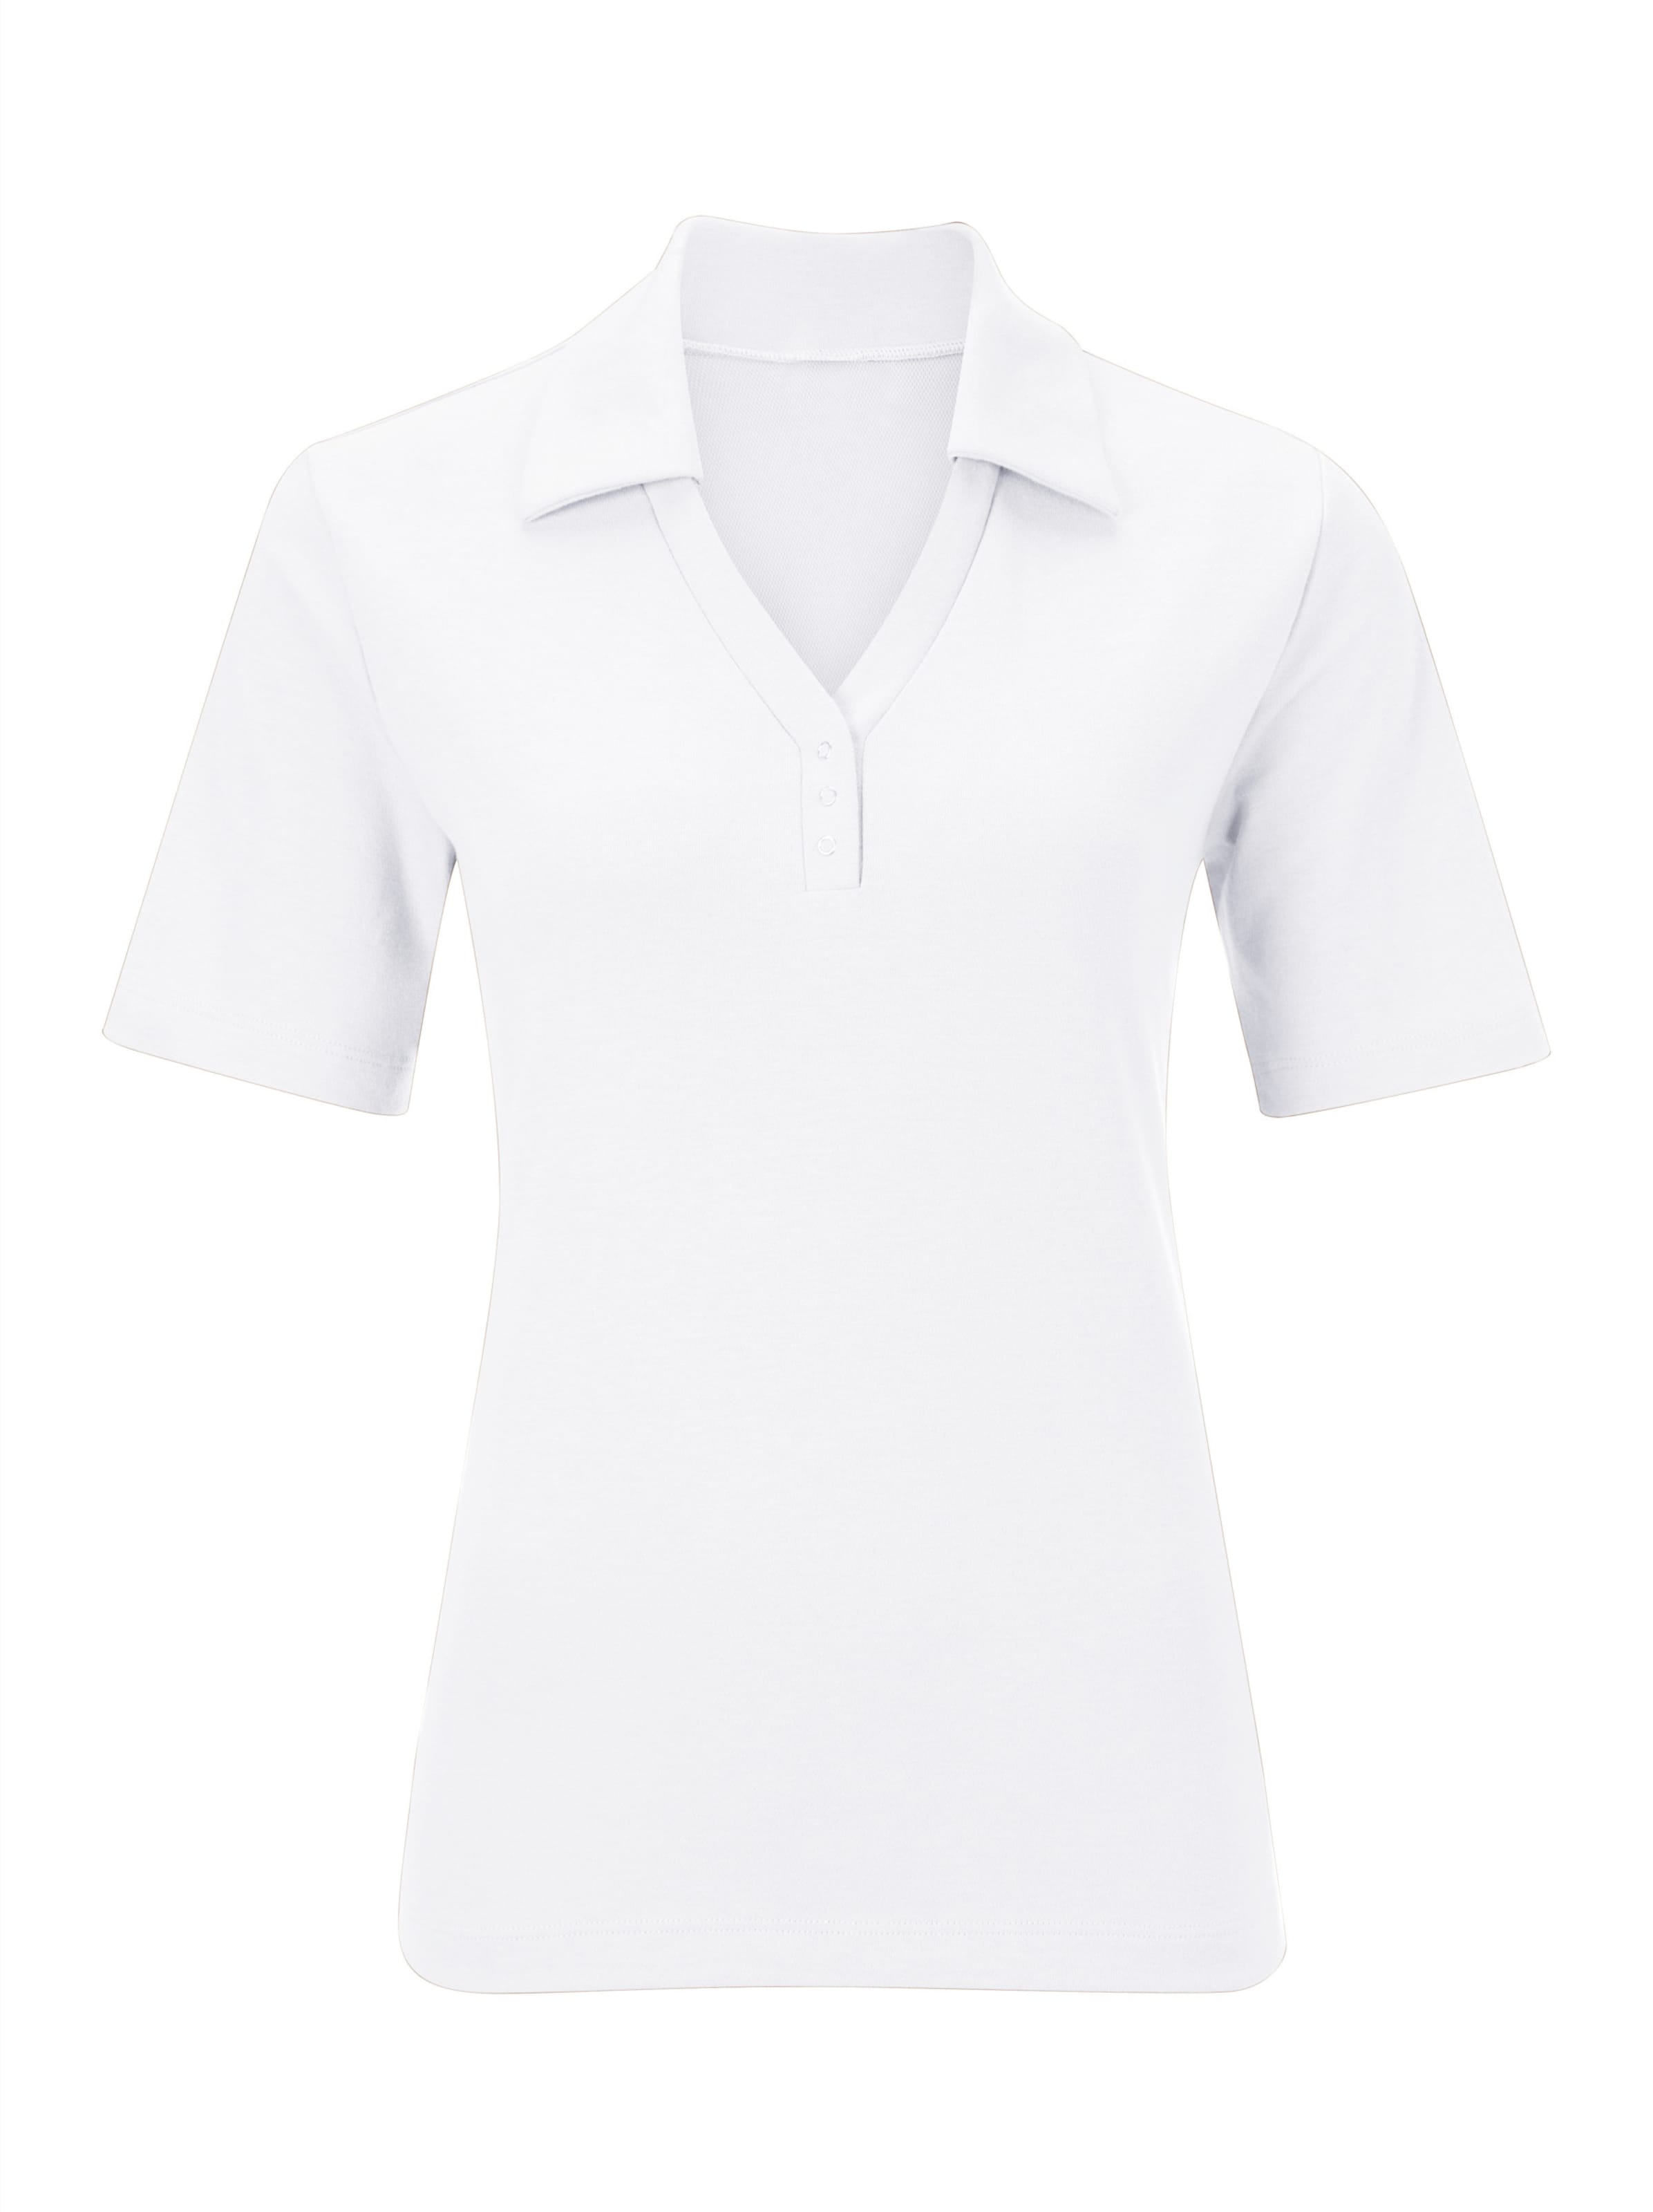 Offener günstig Kaufen-Poloshirt in weiß von heine. Poloshirt in weiß von heine <![CDATA[Shirt mit offener Kragenlösung. Kleine Knopfleiste mit Druckknöpfen. Seitenschlitze. Spezielle Stay Cool & Dry-Ausrüstung.]]>. 